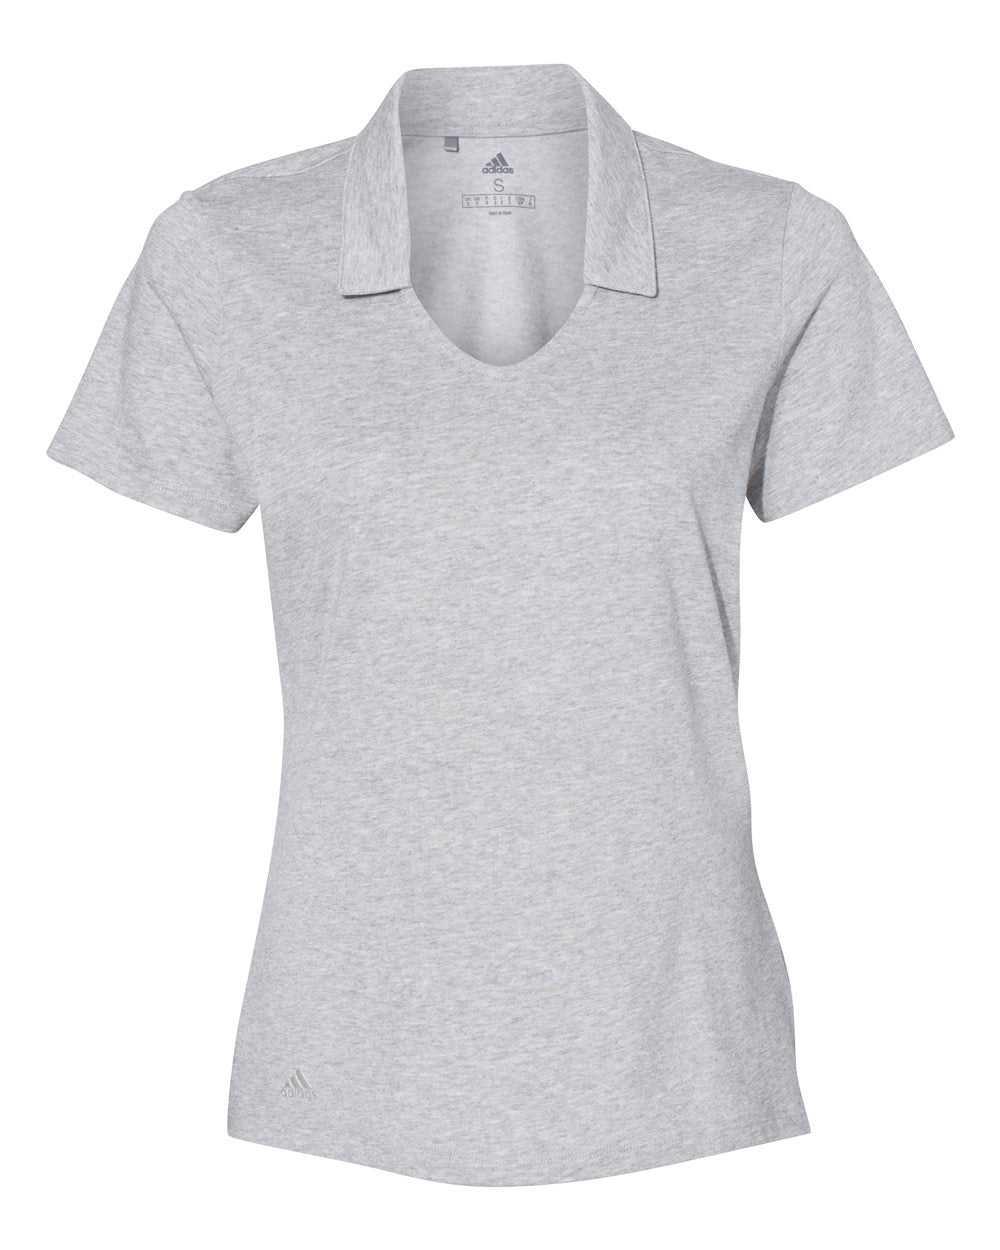 Adidas A323 Women&#39;s Cotton Blend Sport Shirt - Medium Grey Heather - HIT a Double